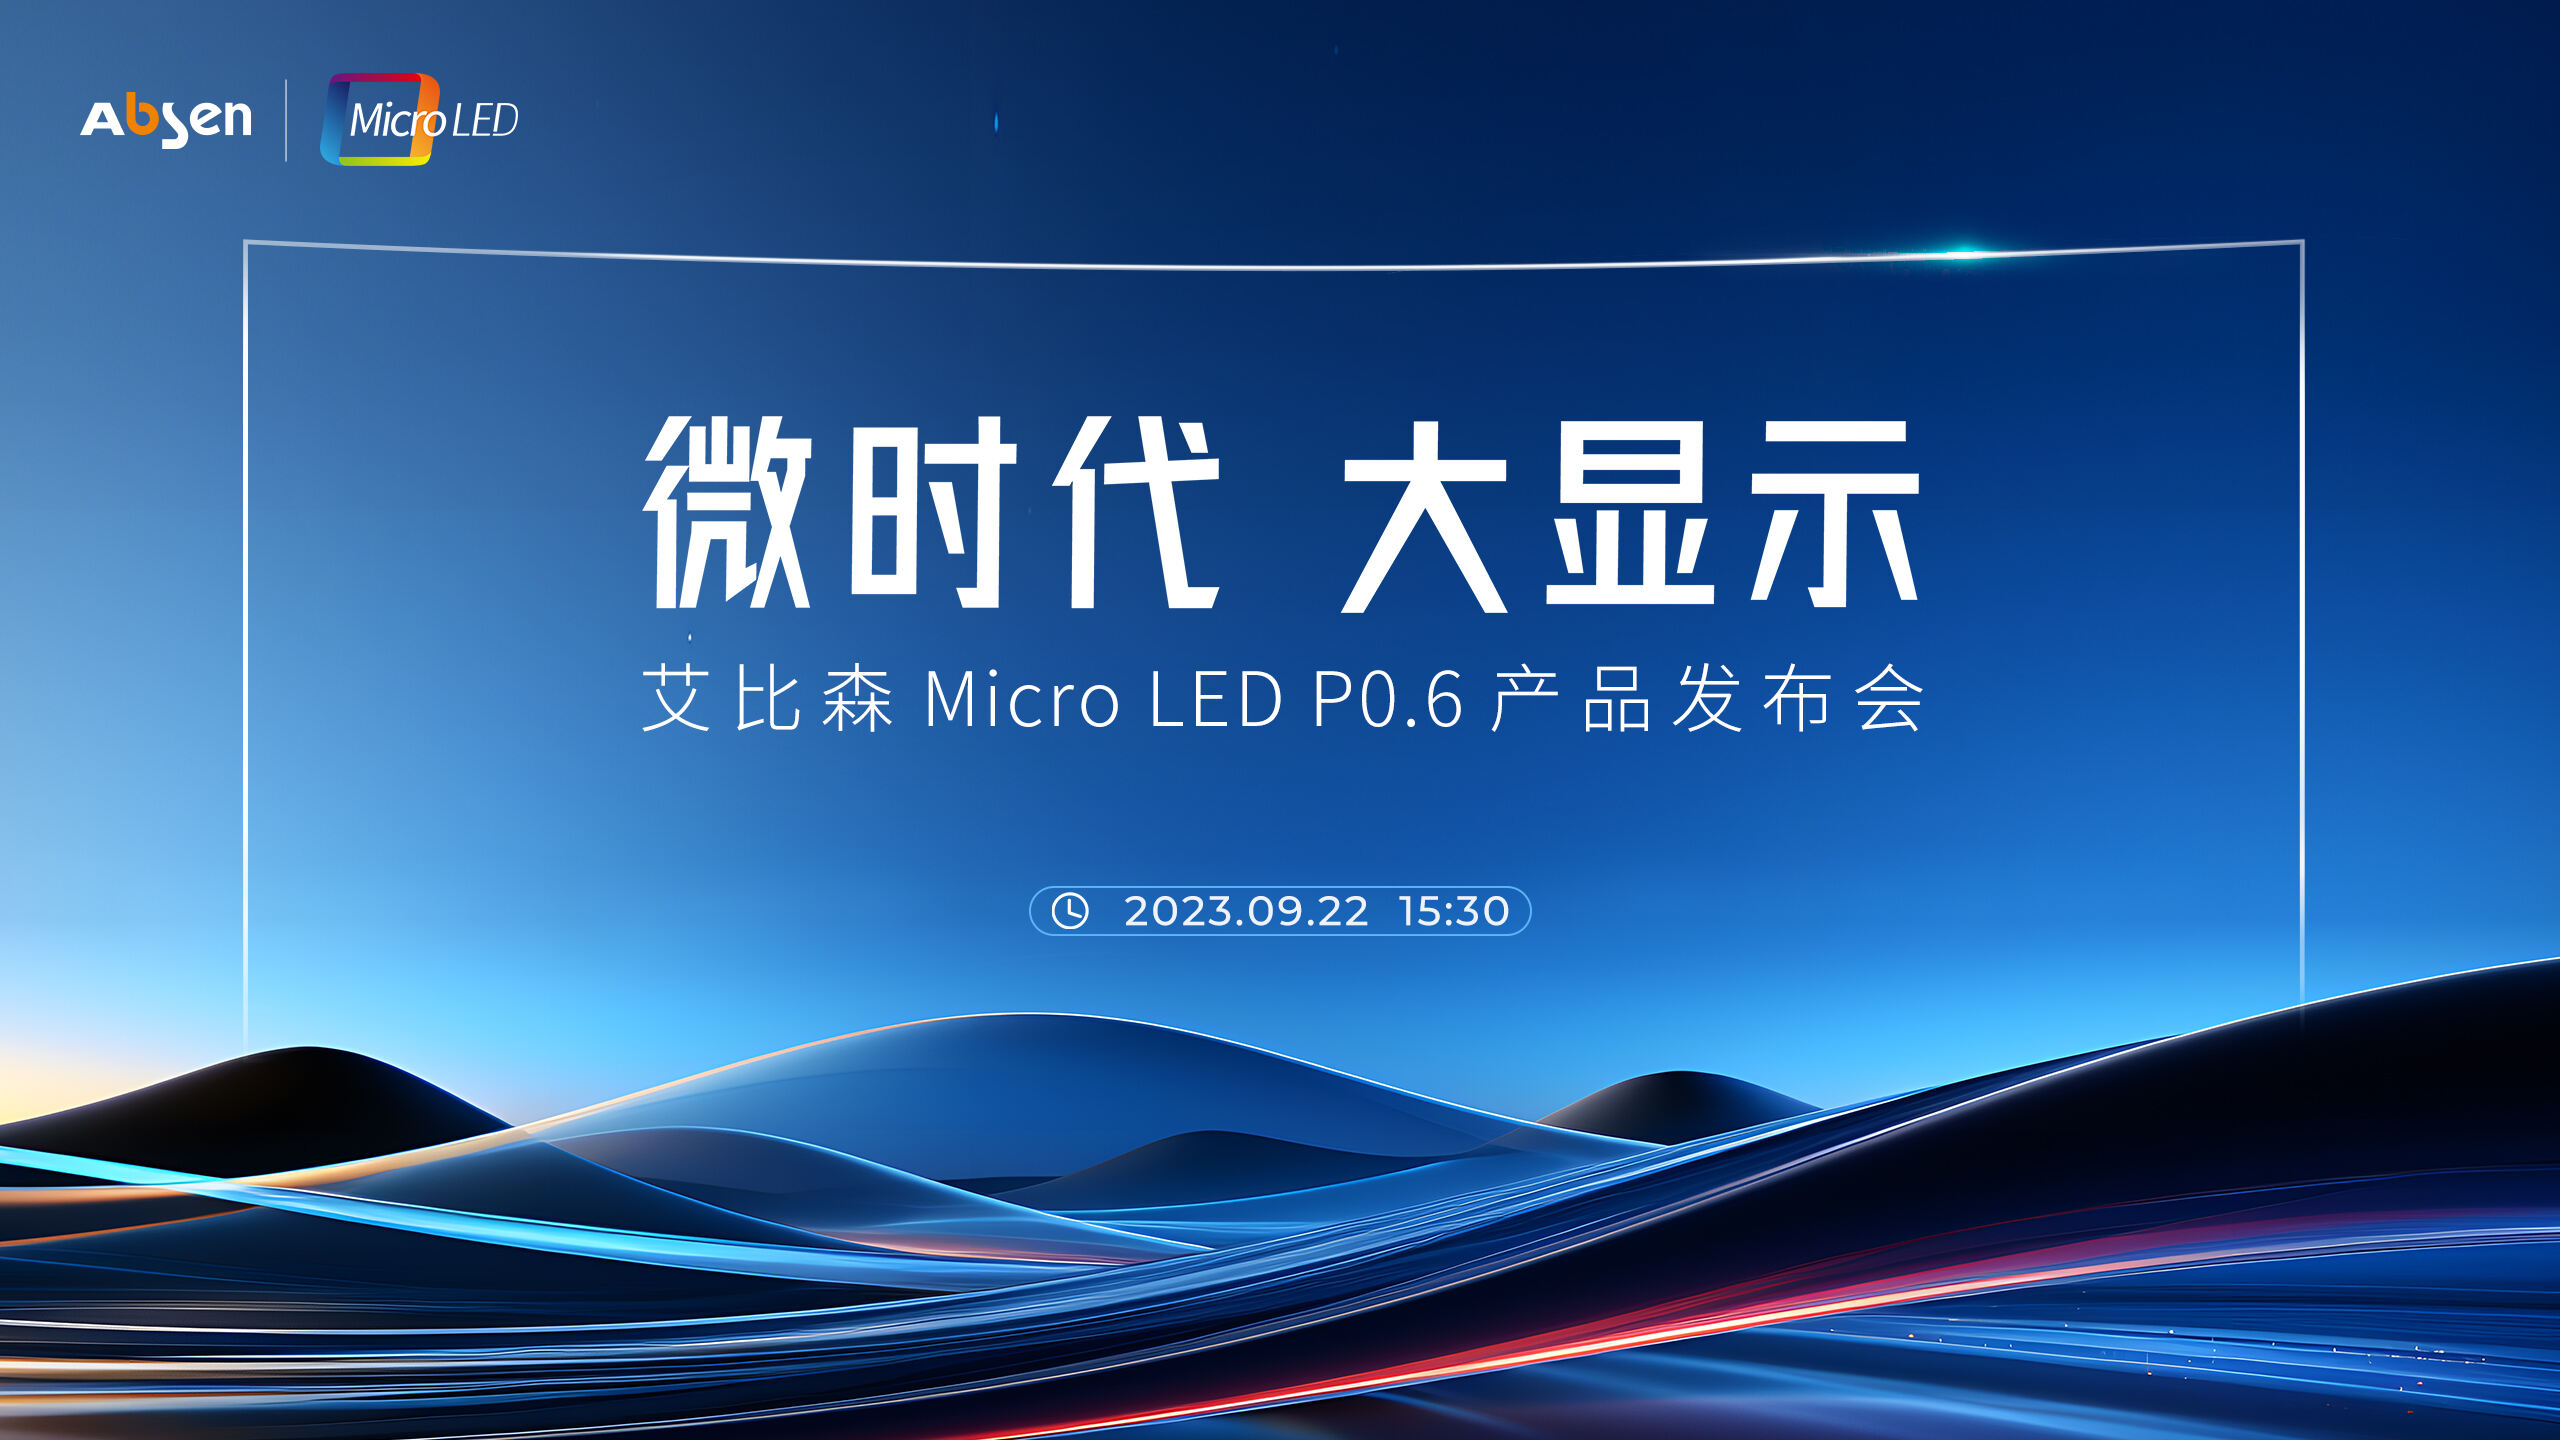 微时代 大显示丨大宝娱乐lg官方网站 Micro LED P0.6 产品重磅宣布